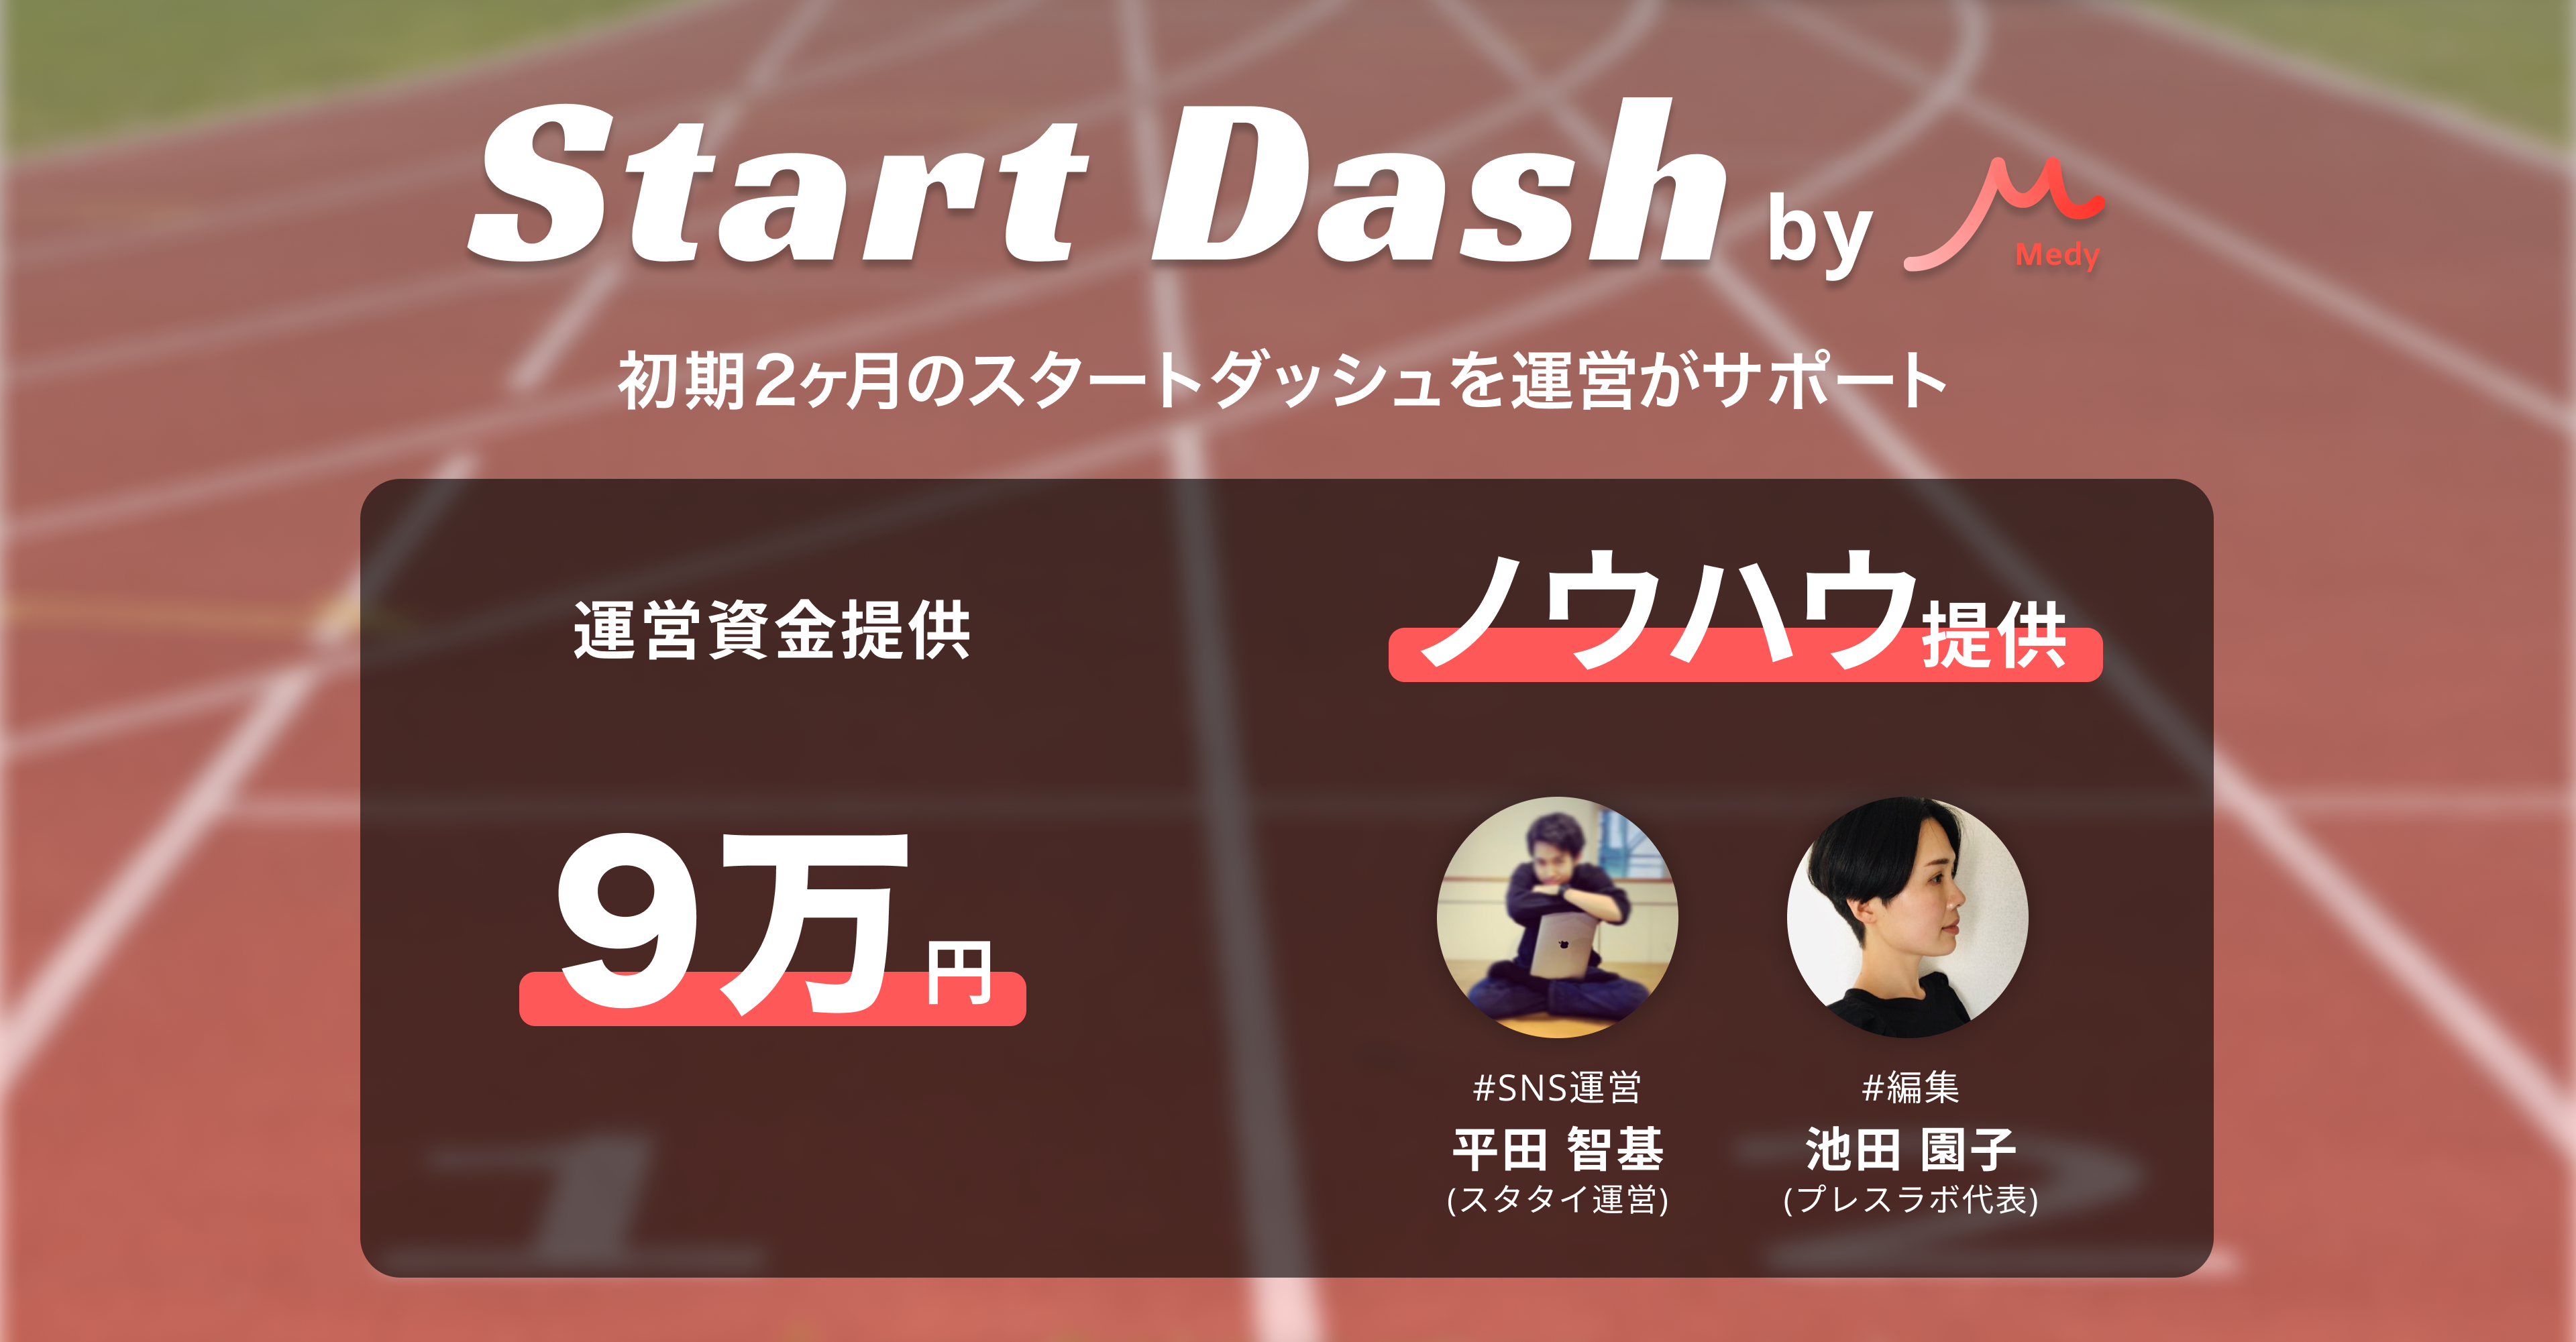 Start Dash by Medyを開催 - 開始から2ヶ月を有償支援&ノウハウ提供